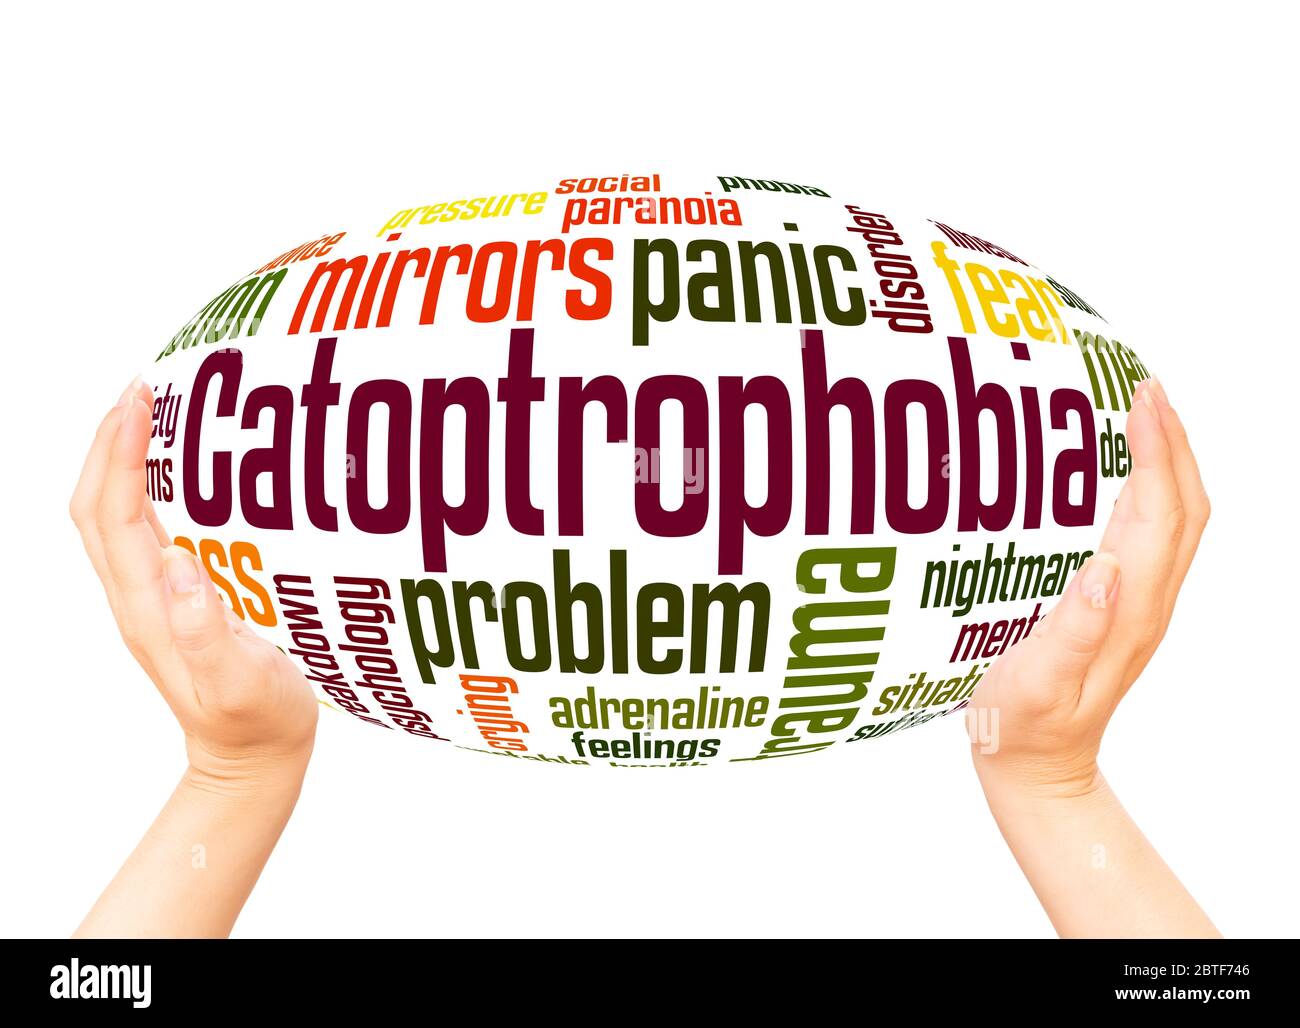 Catoptrophobie Angst vor Spiegeln Wort Hand Kugel Wolke Konzept auf weißem Hintergrund. Stockfoto